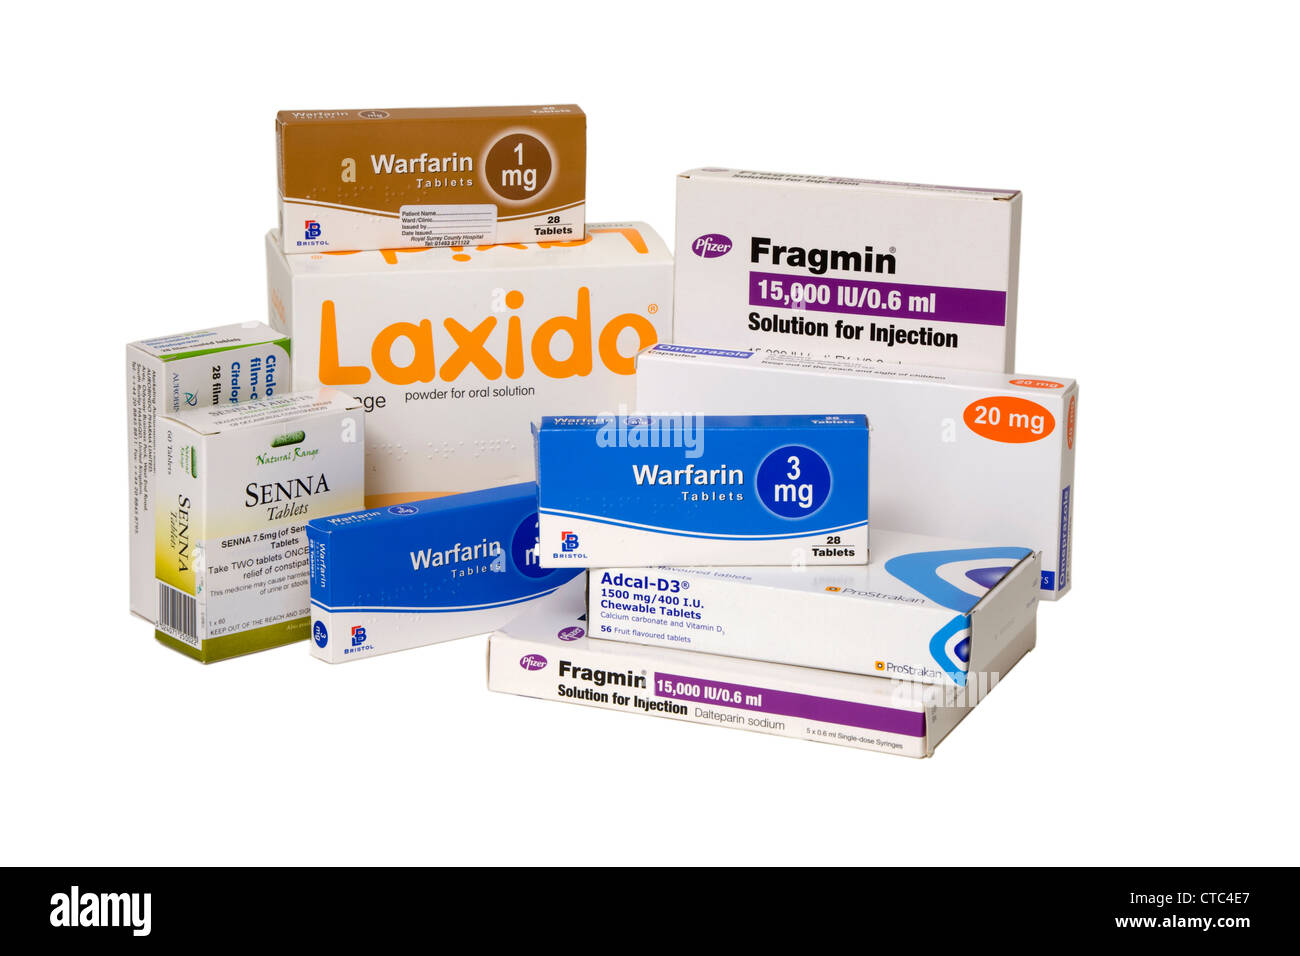 Varie le compresse prescritte & farmaci generalmente usati per malattie sperimentato nell'invecchiamento & vecchio / anziani / senior / OAP pazienti. Foto Stock